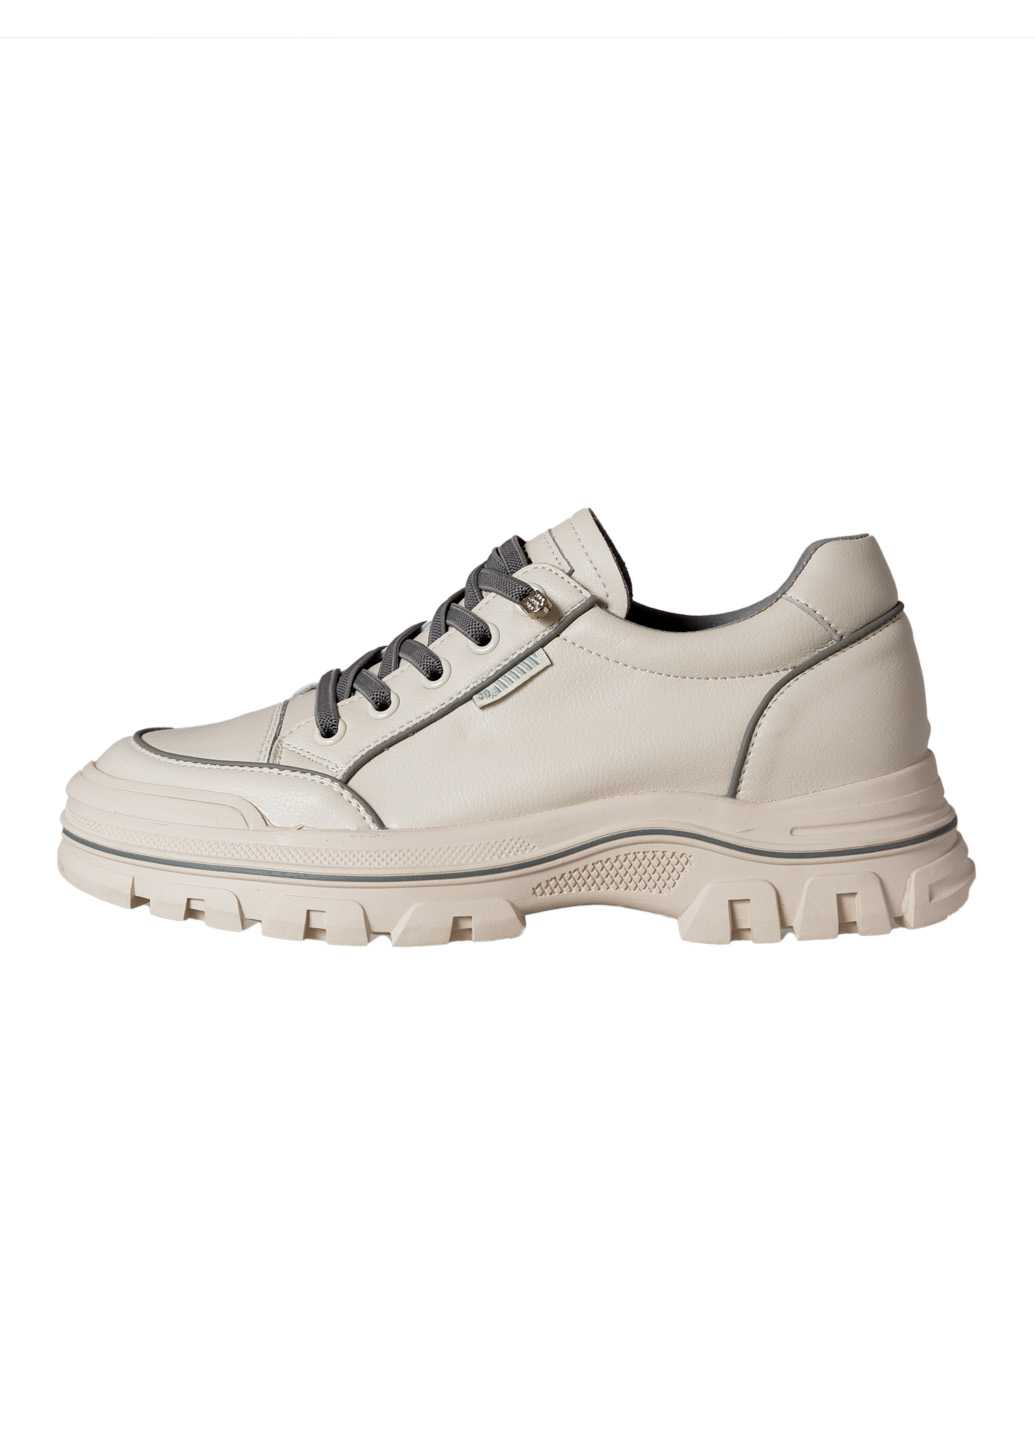 Жіночі шкіряні туфлі молочно-сірого кольору Lifexpert